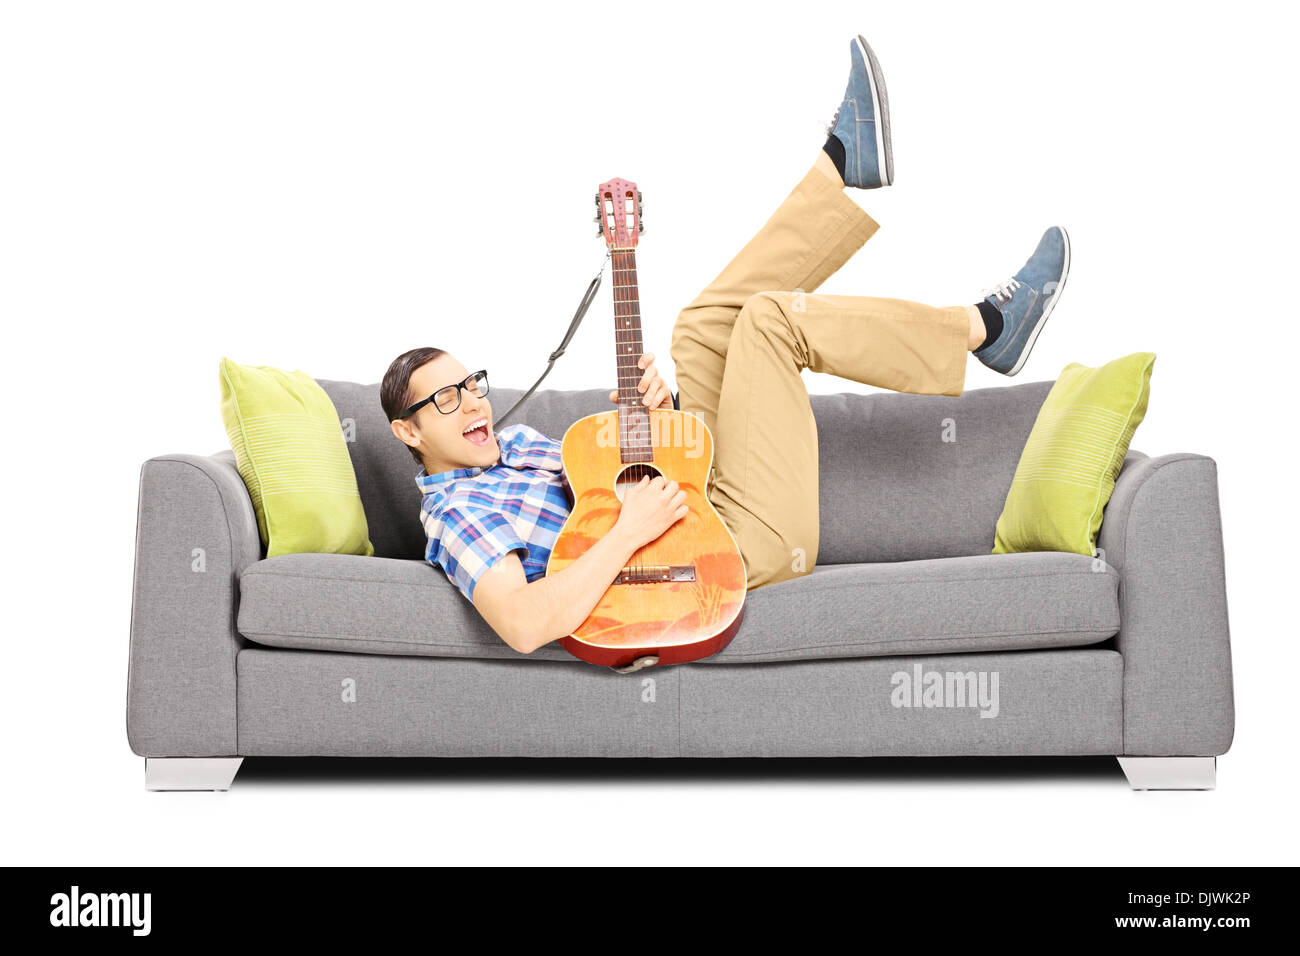 Eccitato giovane maschio sdraiato su un divano moderno e suonando una chitarra acustica Foto Stock